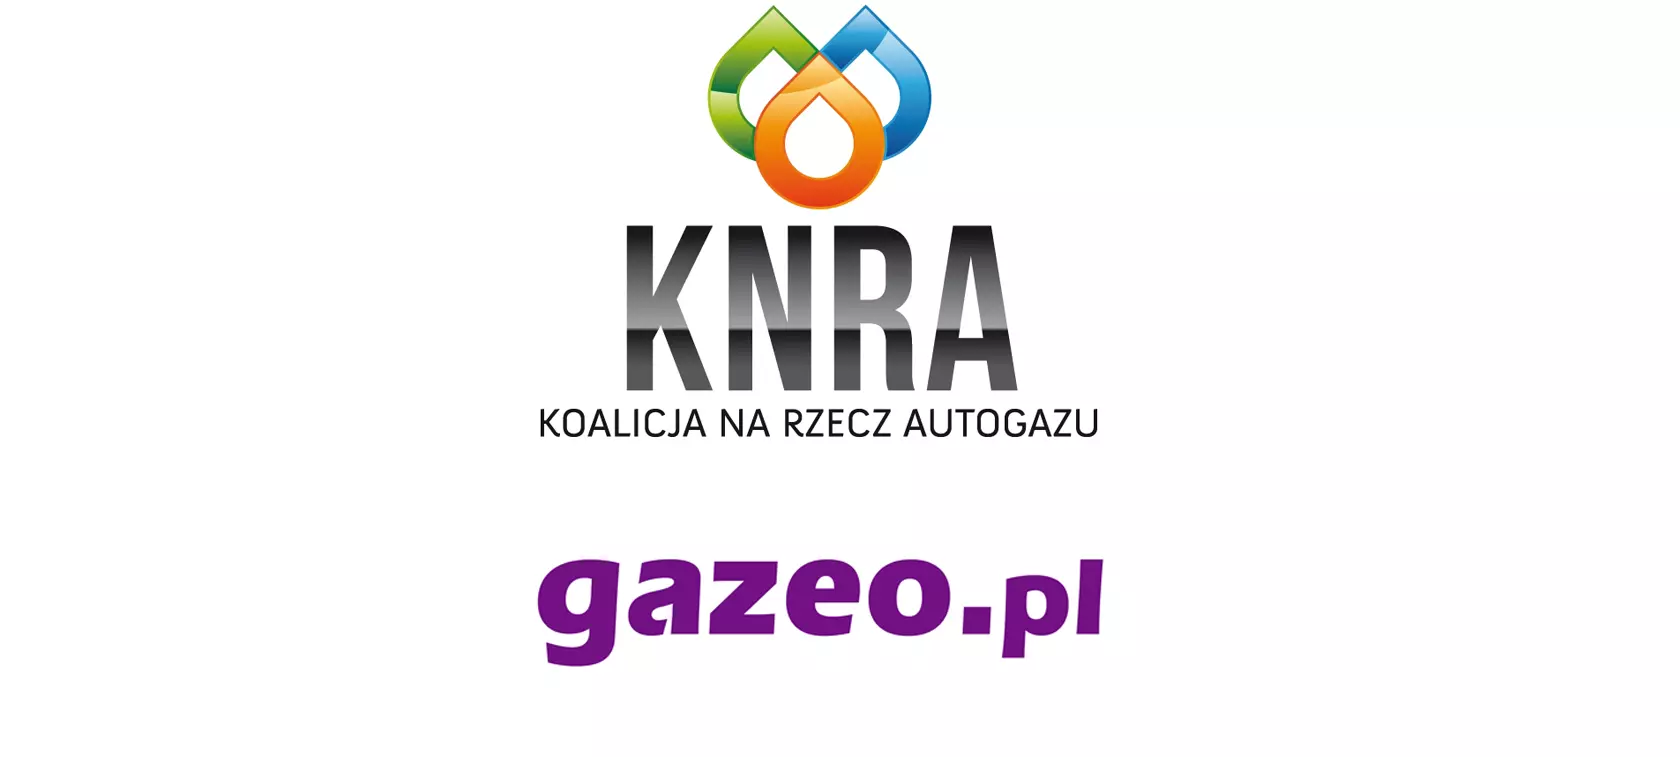 KNRA i gazeo.pl razem dla branży